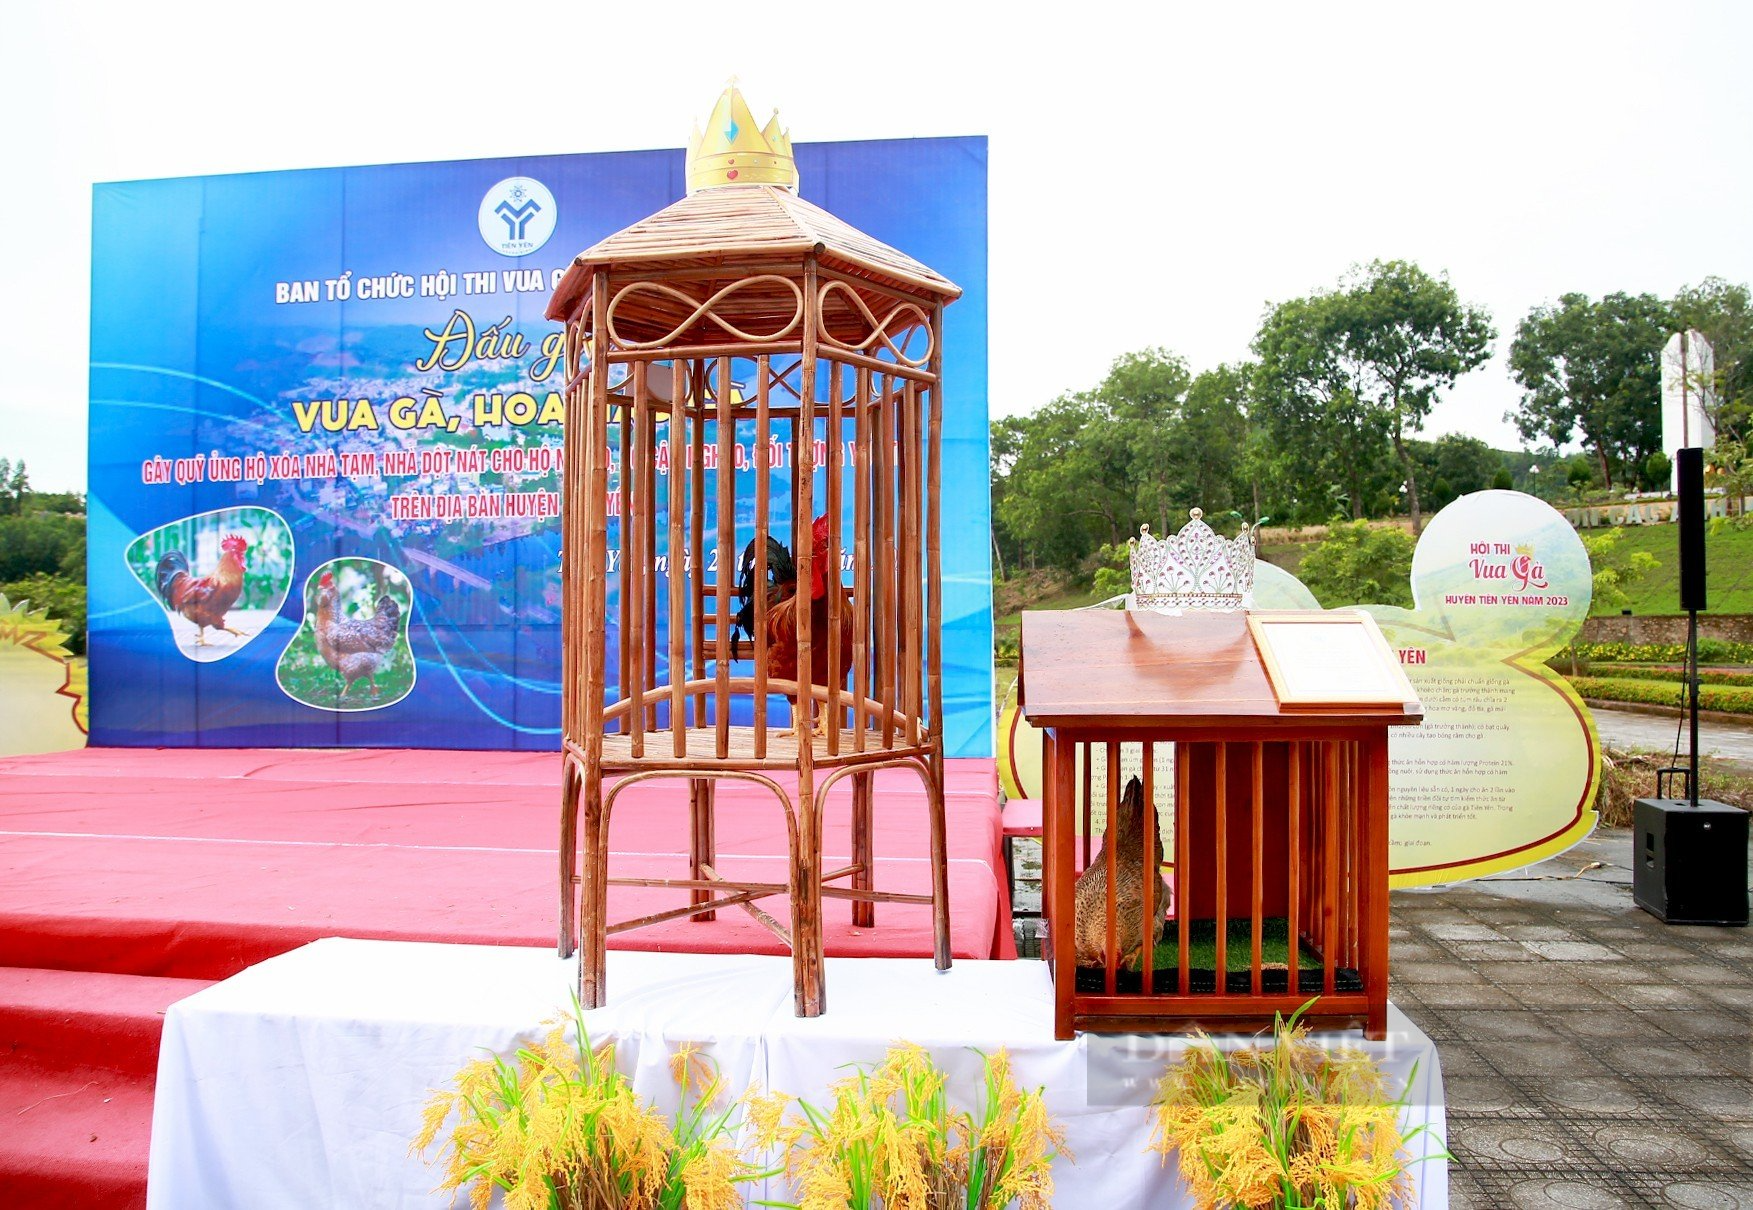 Vua gà, Hoa hậu gà ở Quảng Ninh lên sàn đấu giá, gây quỹ ủng hộ xóa nhà tạm cho người nghèo - Ảnh 1.